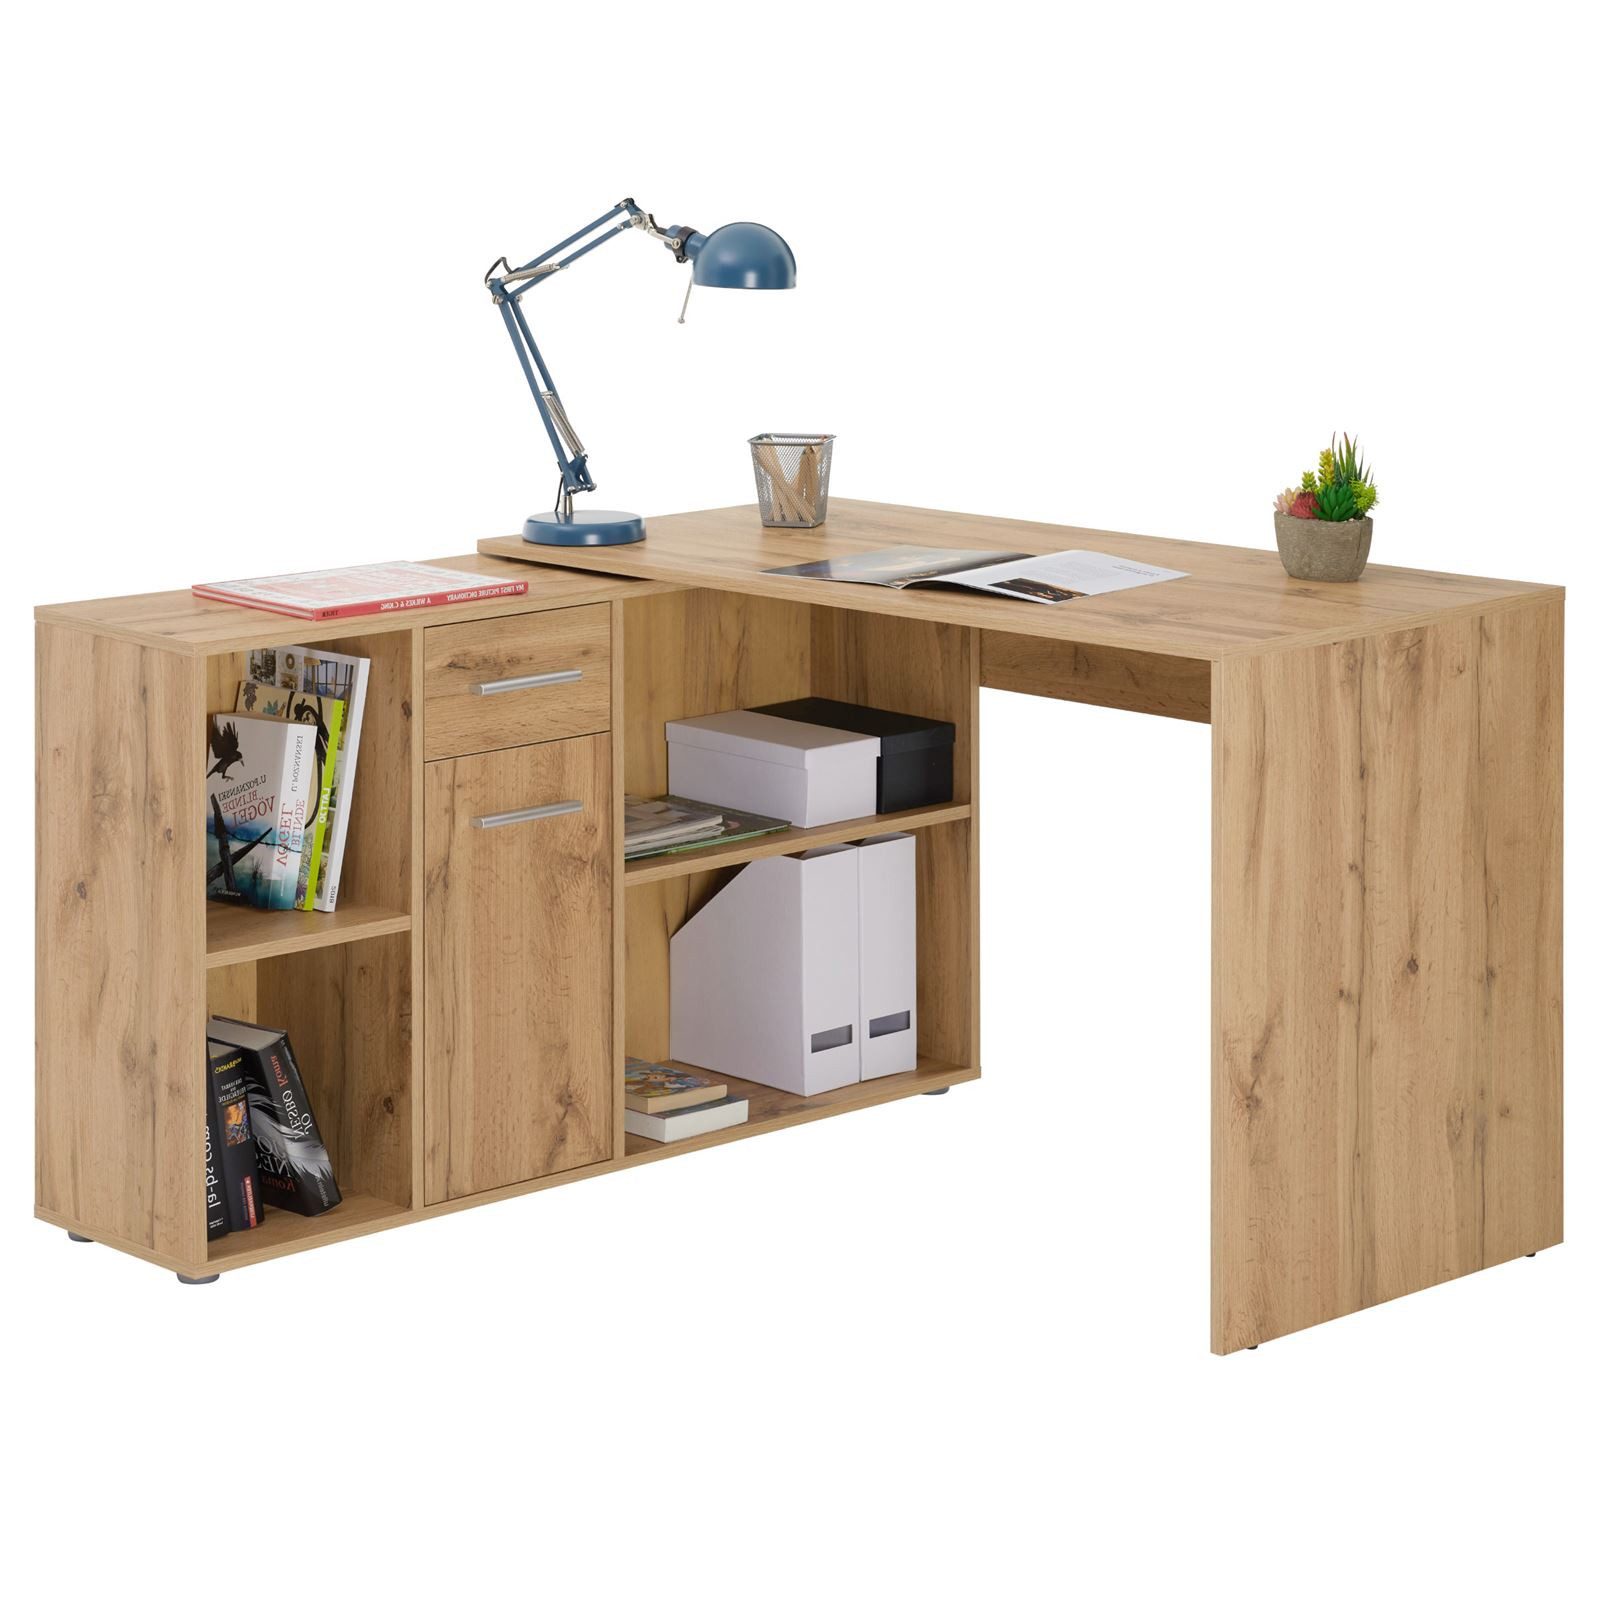 CARO-Möbel Eckschreibtisch DIEGO, Eckschreibtisch mit Regal Büro Arbeits Computertisch Winkelschreibtisc